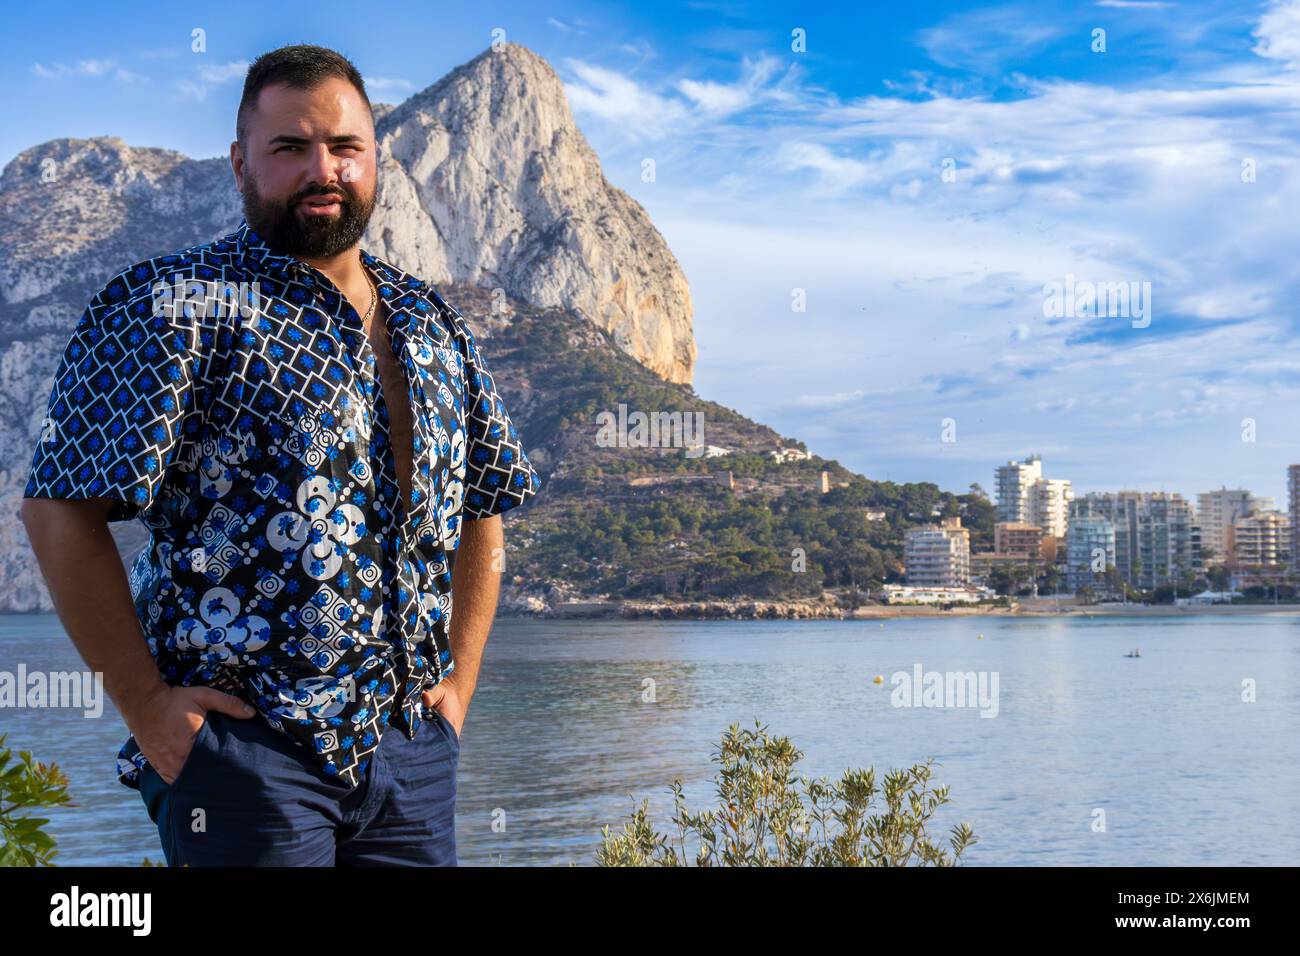 Dieses Porträt zeigt einen 30-jährigen Mann in Calpe, Spanien, während er in der Betrachtung vor dem herrlichen Ifach-Felsen steht. Stockfoto